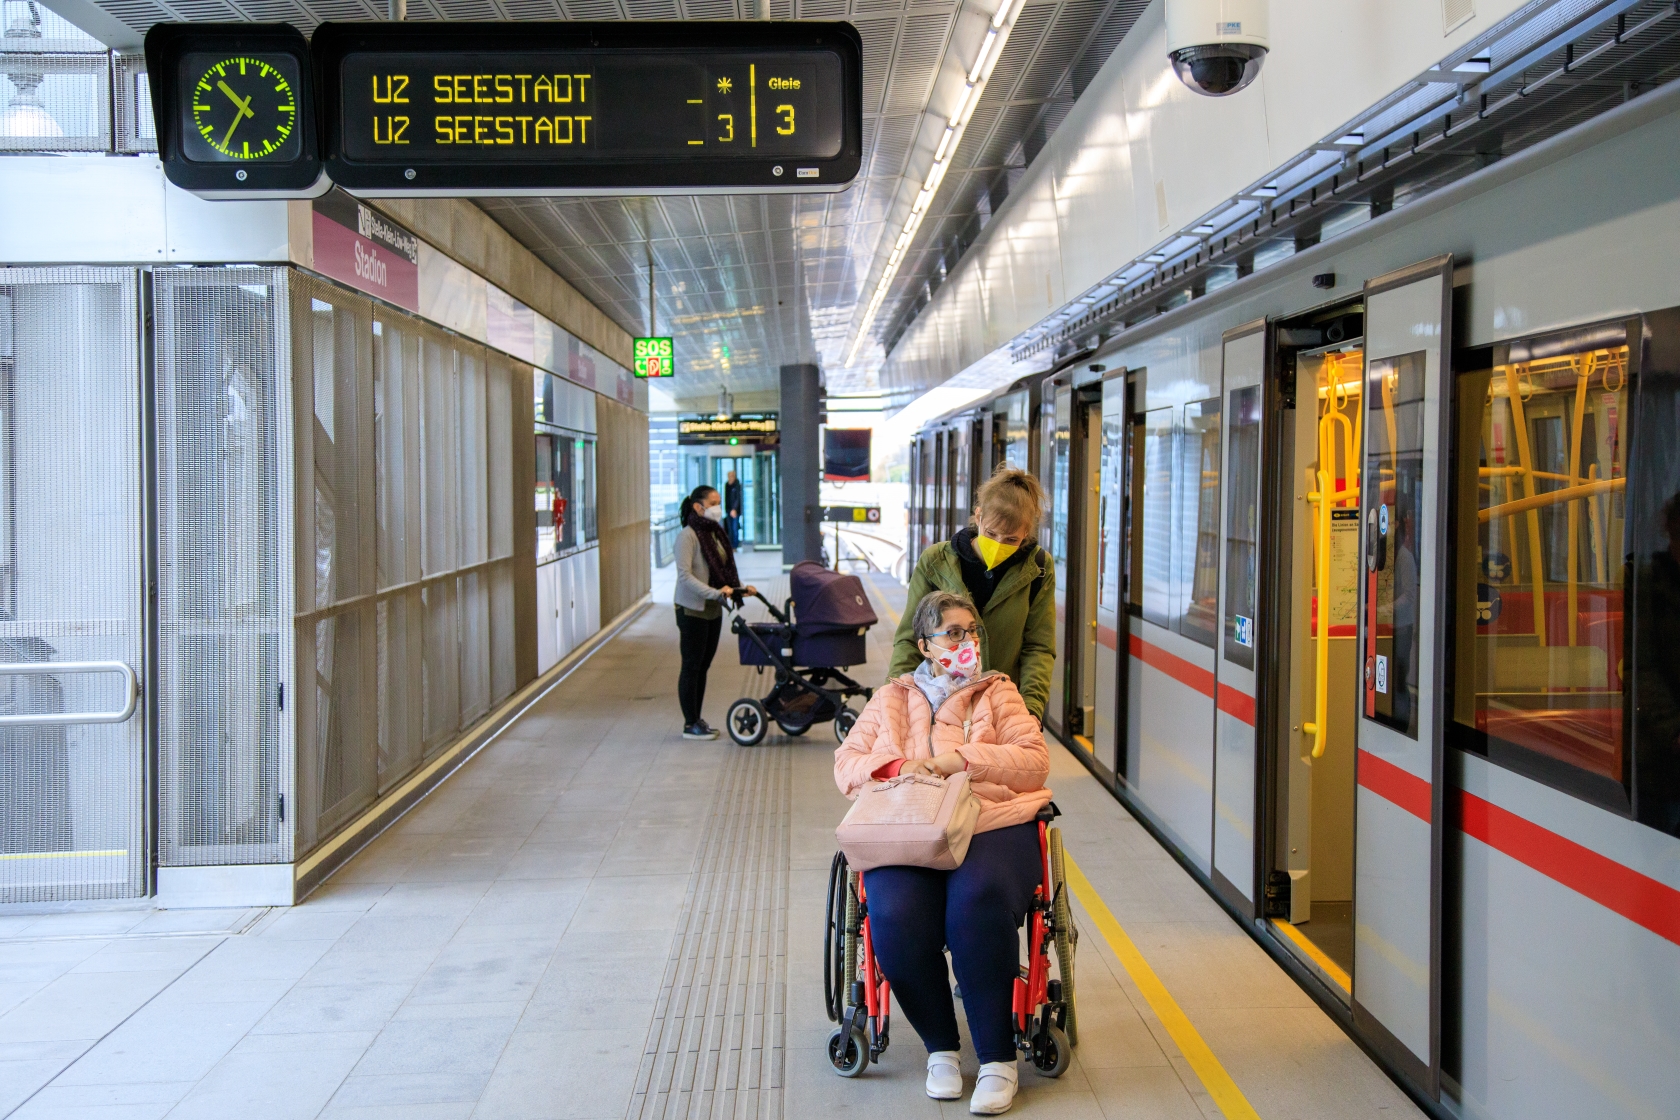 Ein-/Ausstiegsituation auf einem U-Bahnsteig. Im Vordergrund ein weiblicher Fahrgast im Rollstuhl sitzend, geschoben von einer Dame. Im Hintergrund ein weiblicher Fahrgast mit Kinderwagen. Alle tragen eine FFP2 Maske.